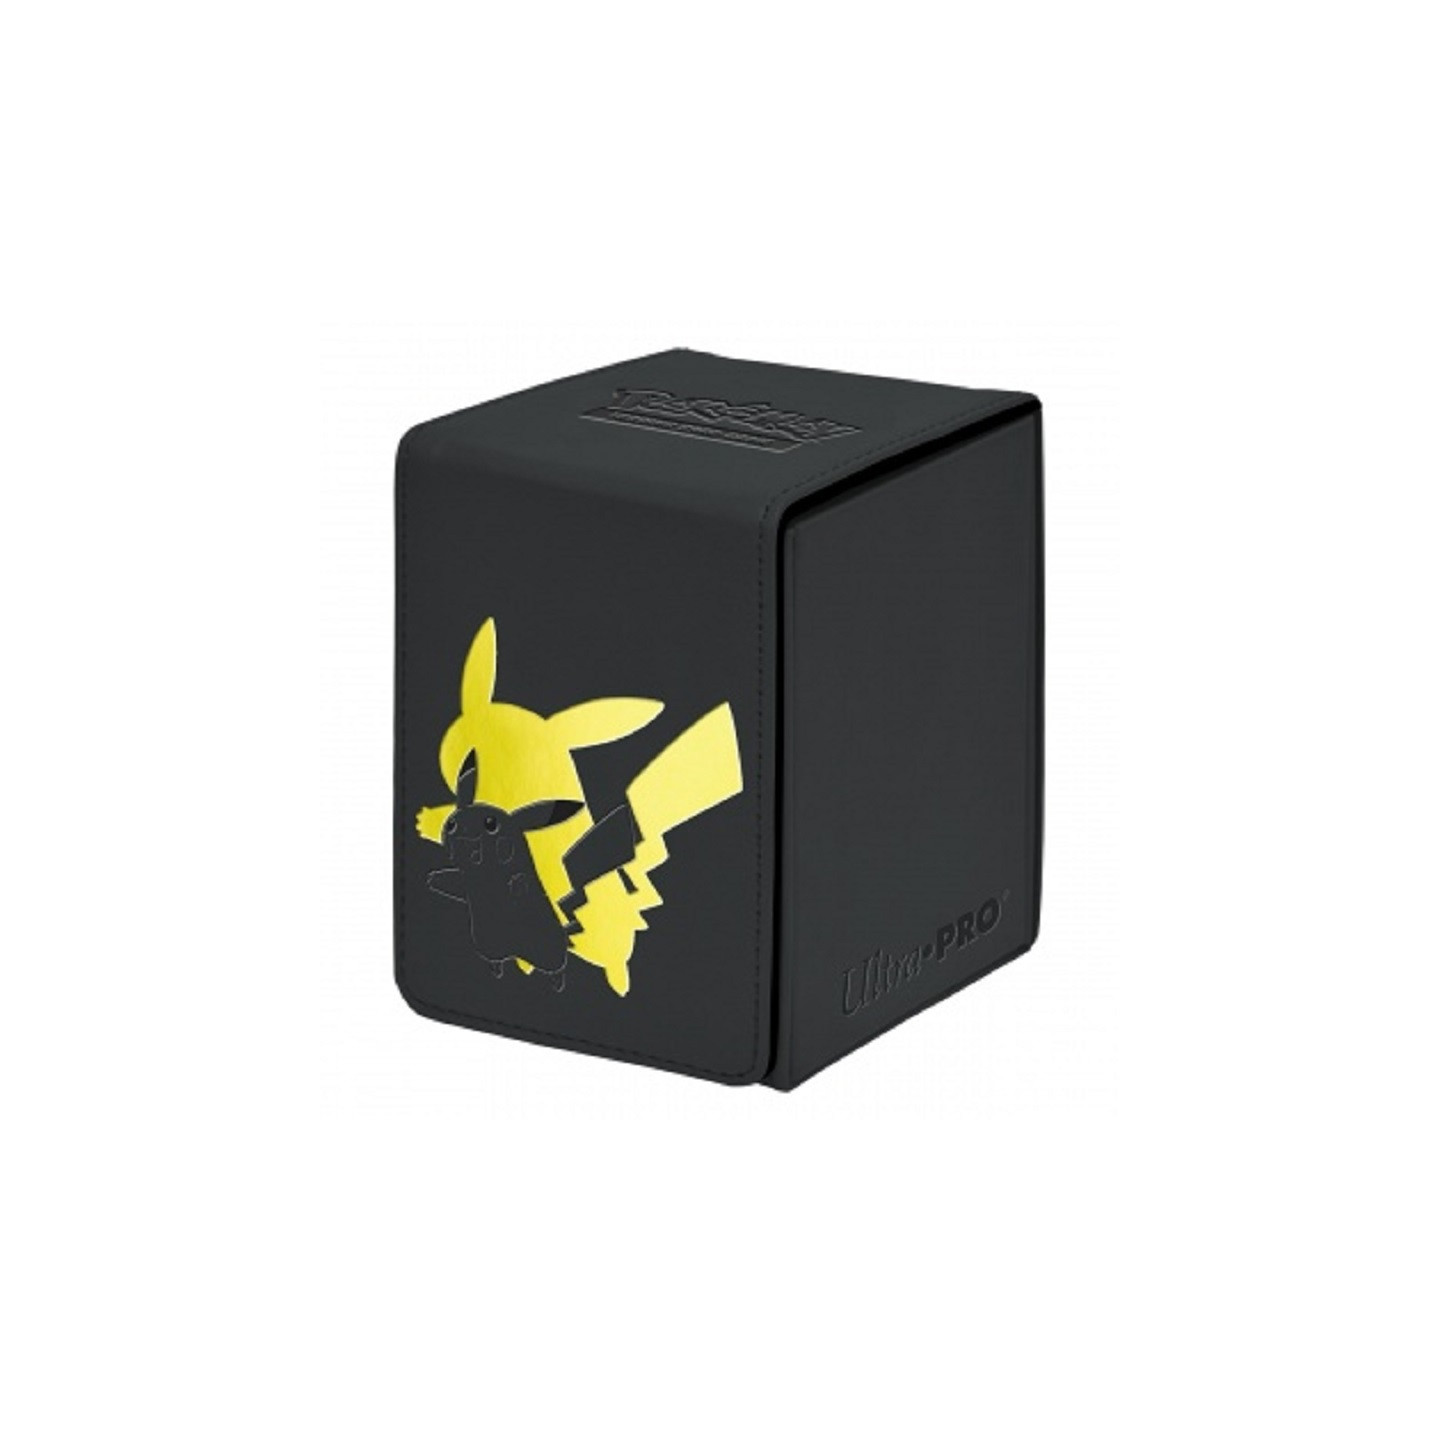 Alcove Flip Box - Pokémon - Pikachu 100+ boite de rangement haut de gamme -  DracauGames